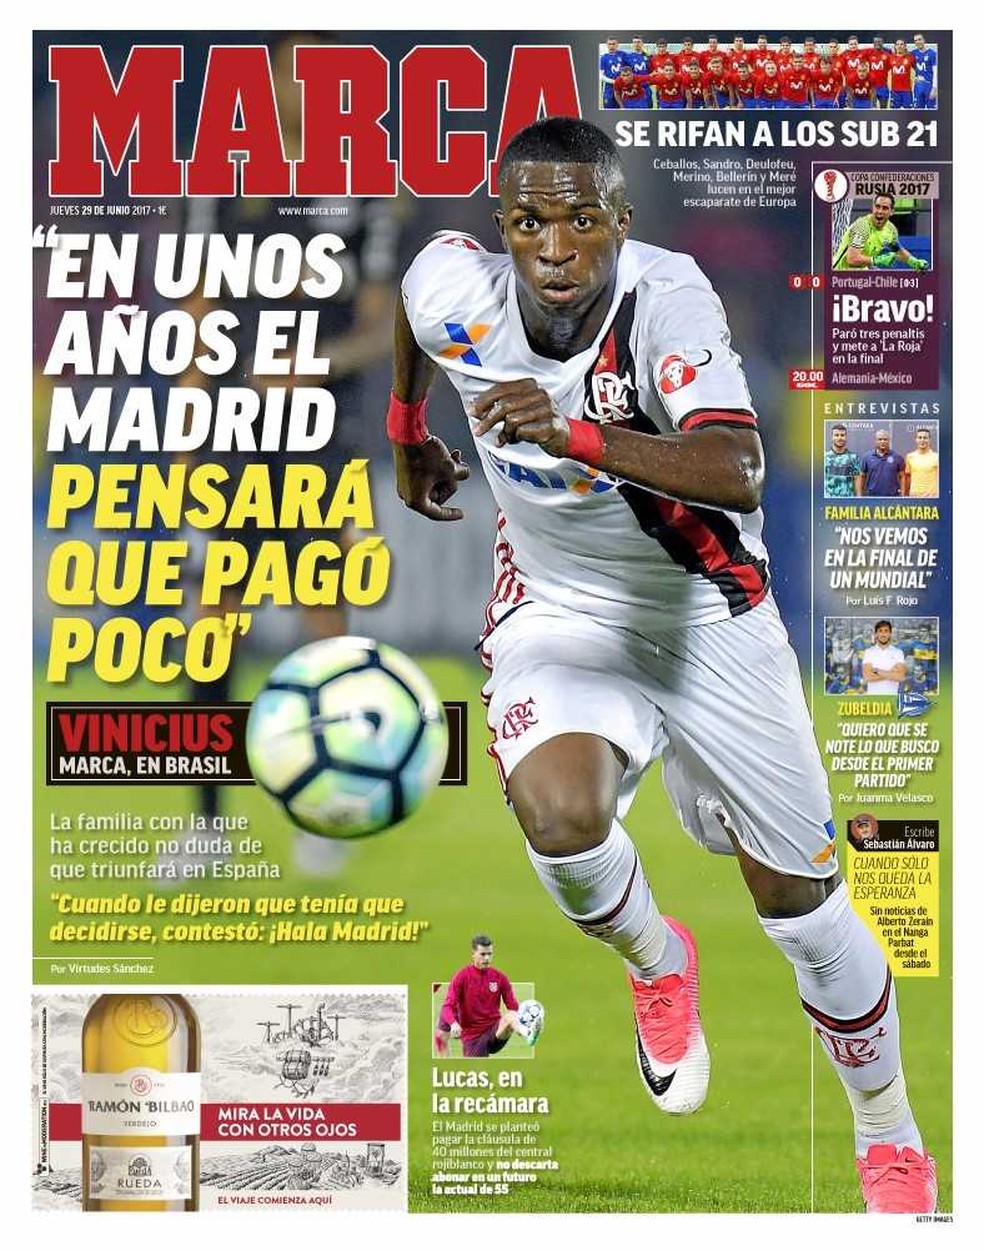 Jornal espanhol faz enquete para descobrir qual o melhor time do Brasil -  Futebol - Fera